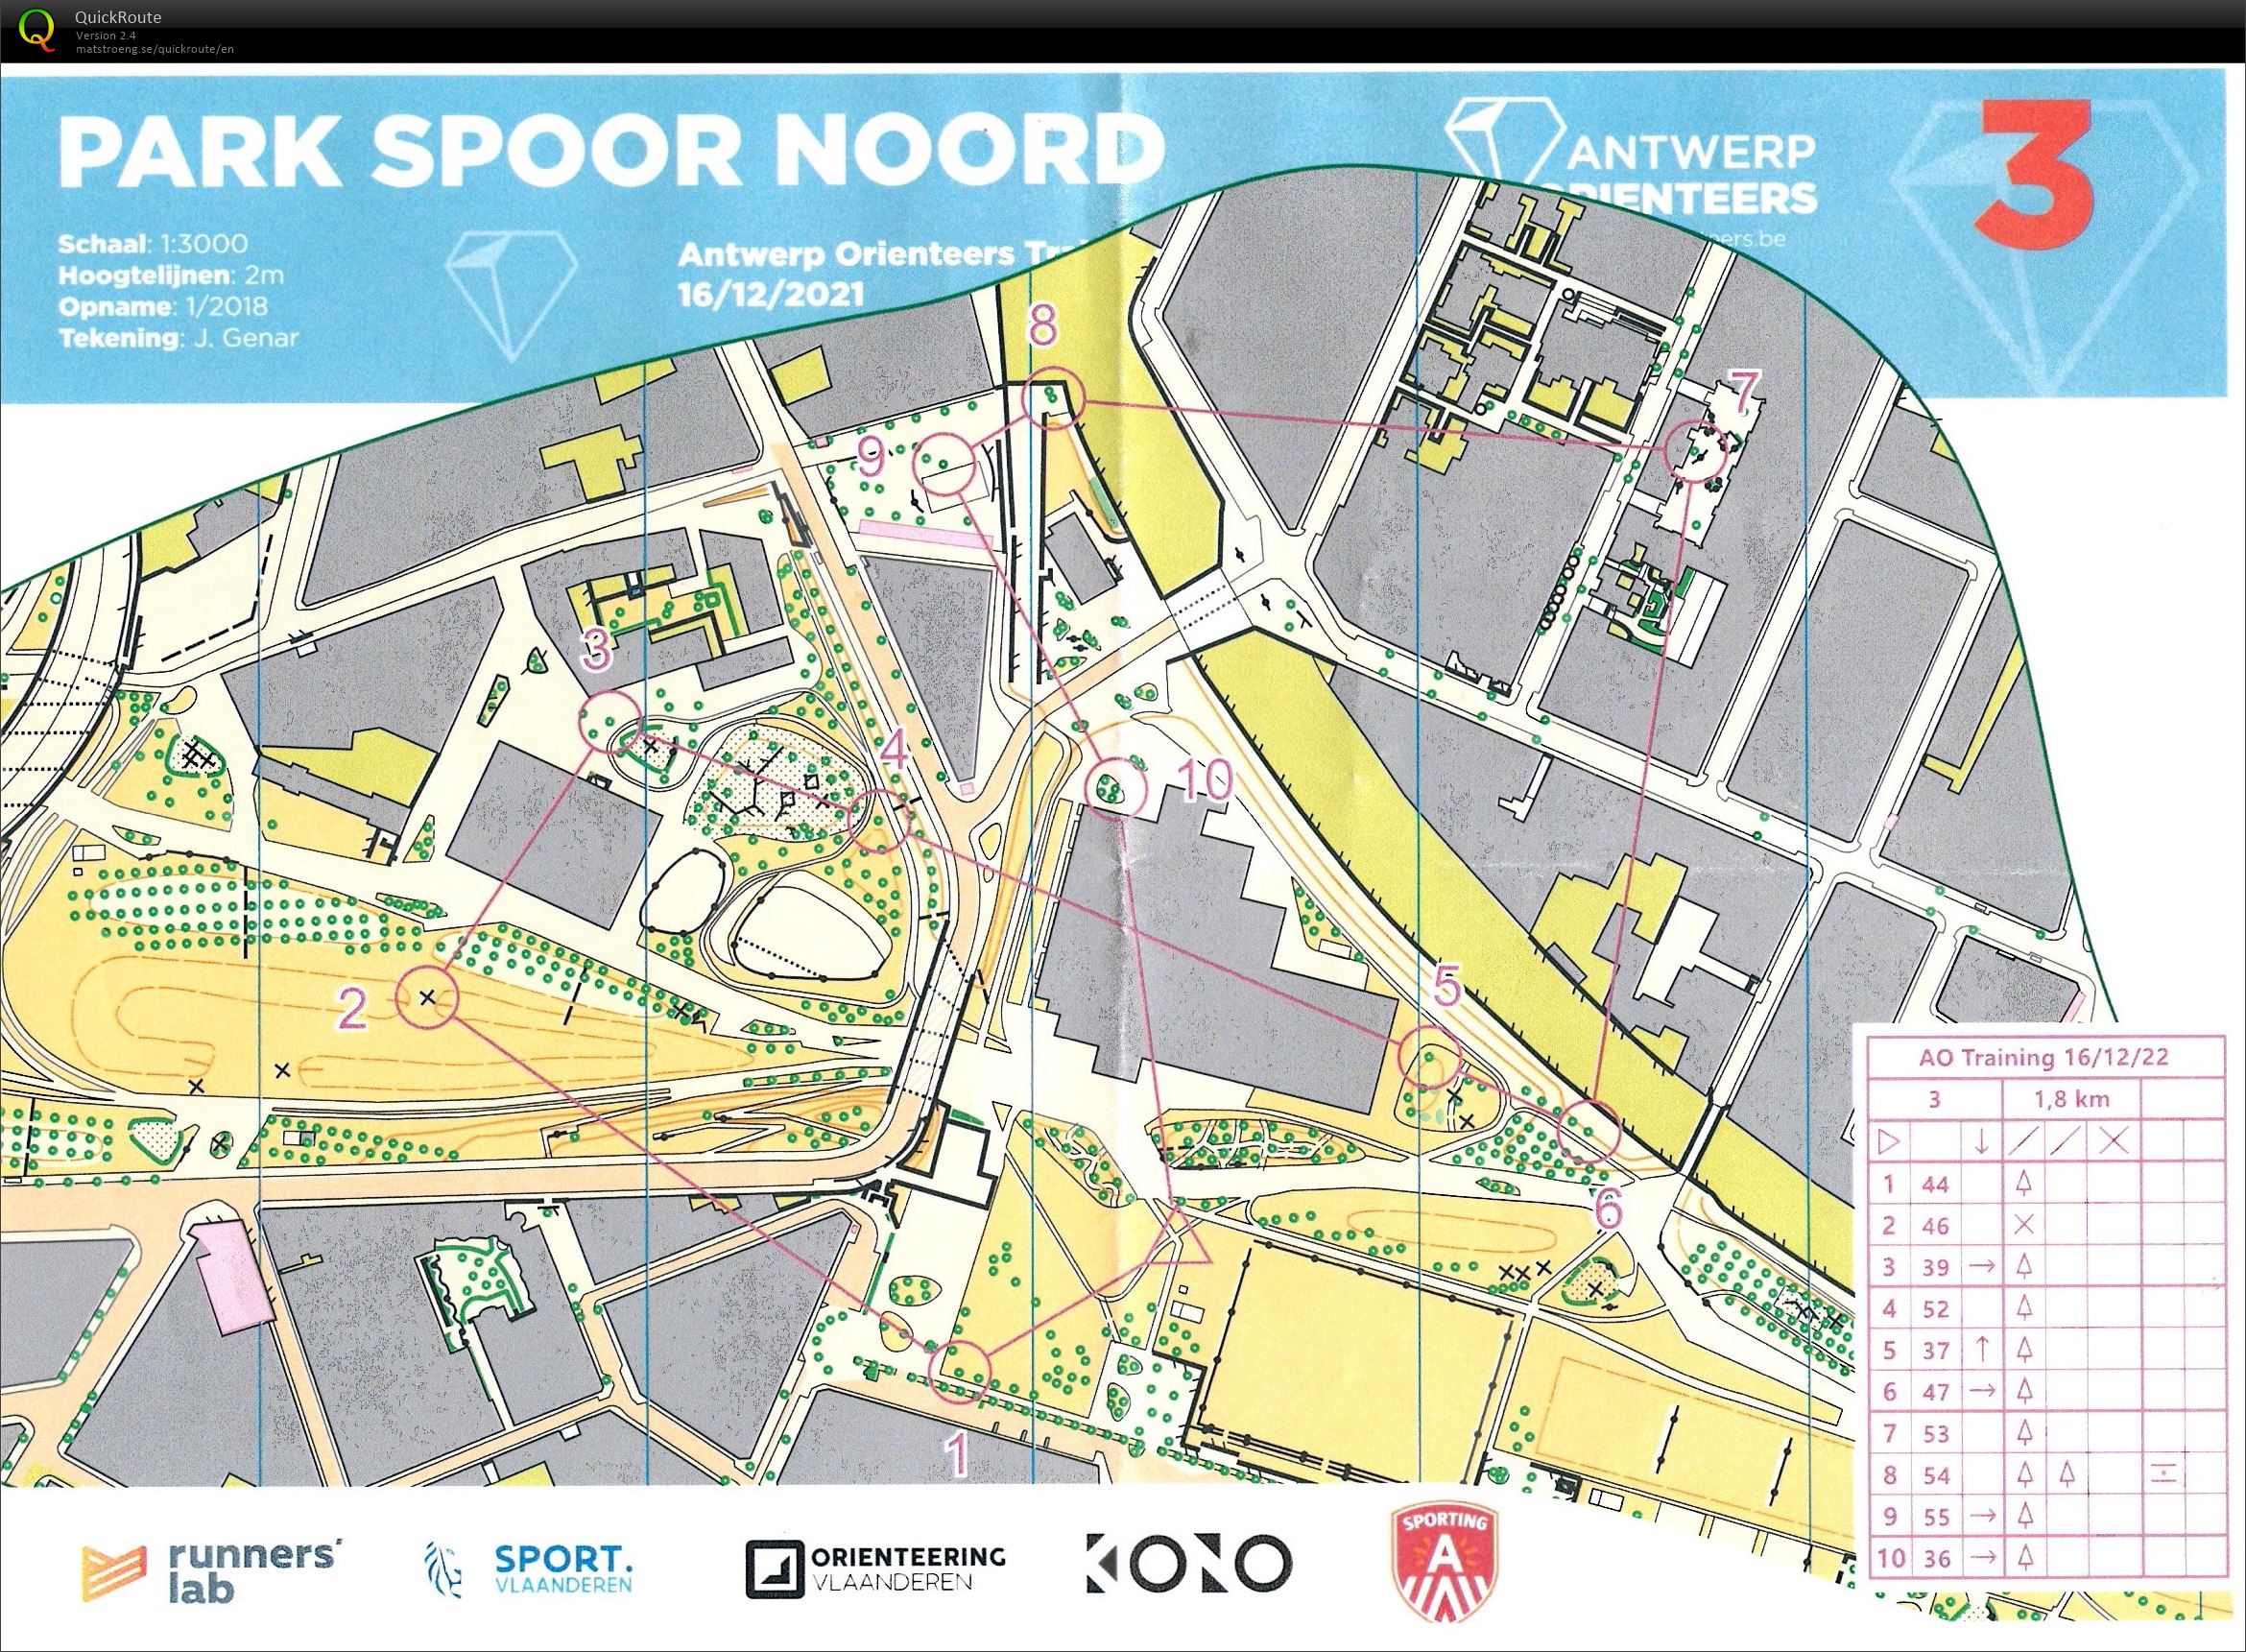 Park Spoor Noord (16/12/2021)